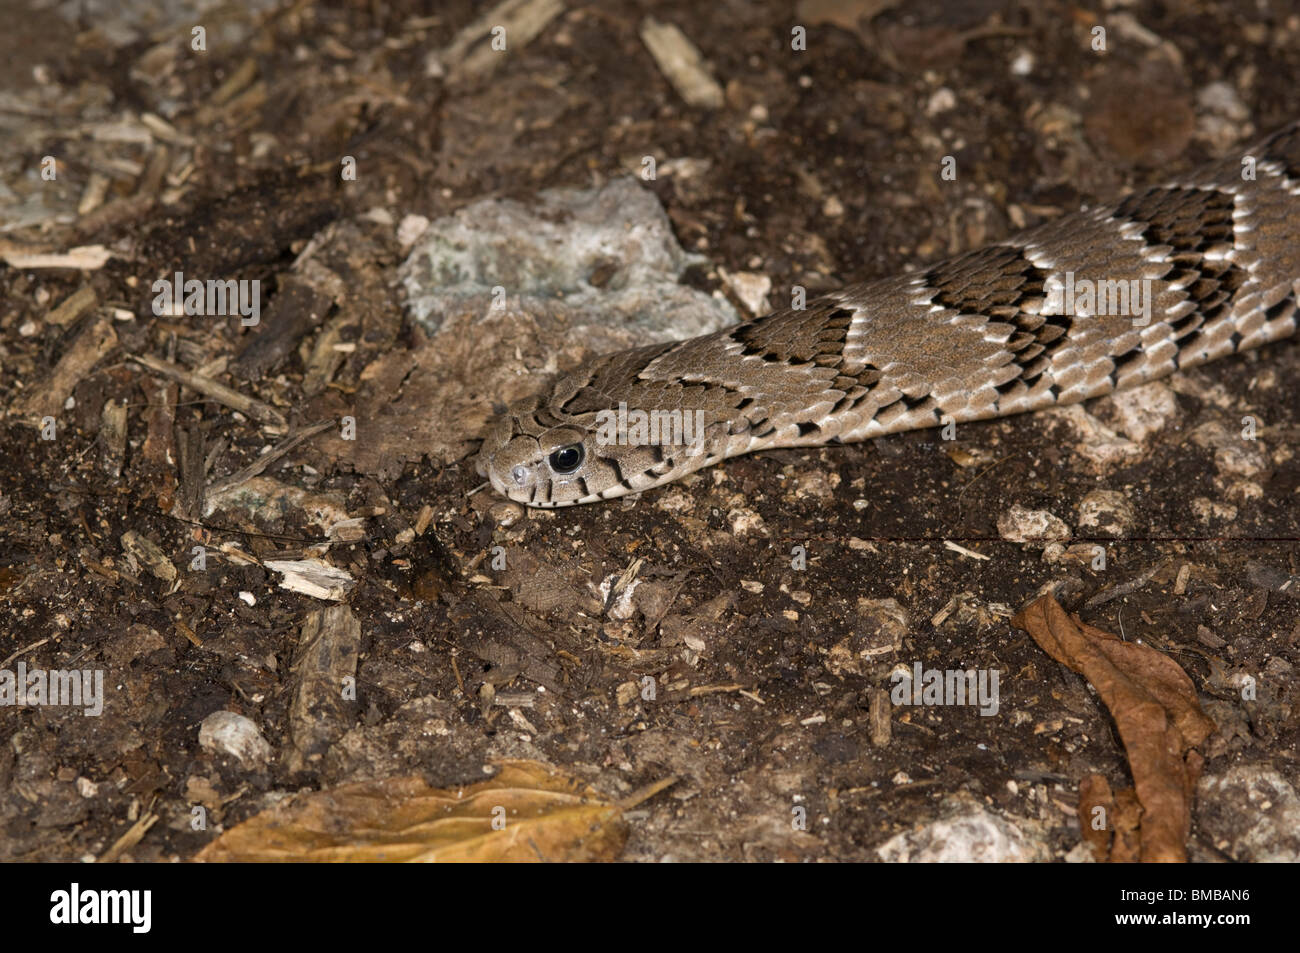 Rhombic night adder ( Causus rhombeatus), Kenya Stock Photo